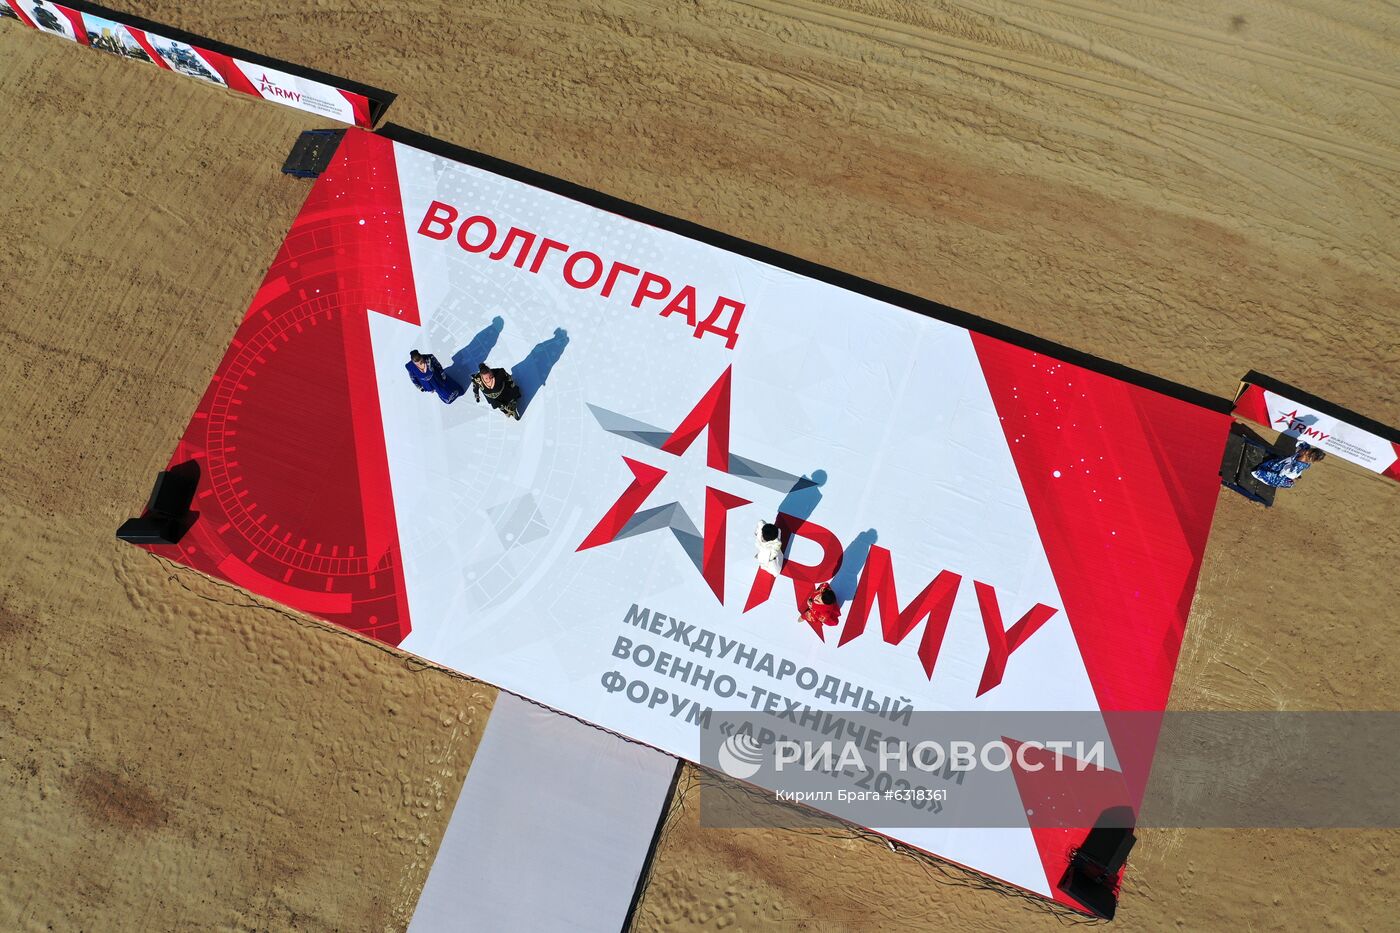 Открытие форума "Армия-2020" в городах России